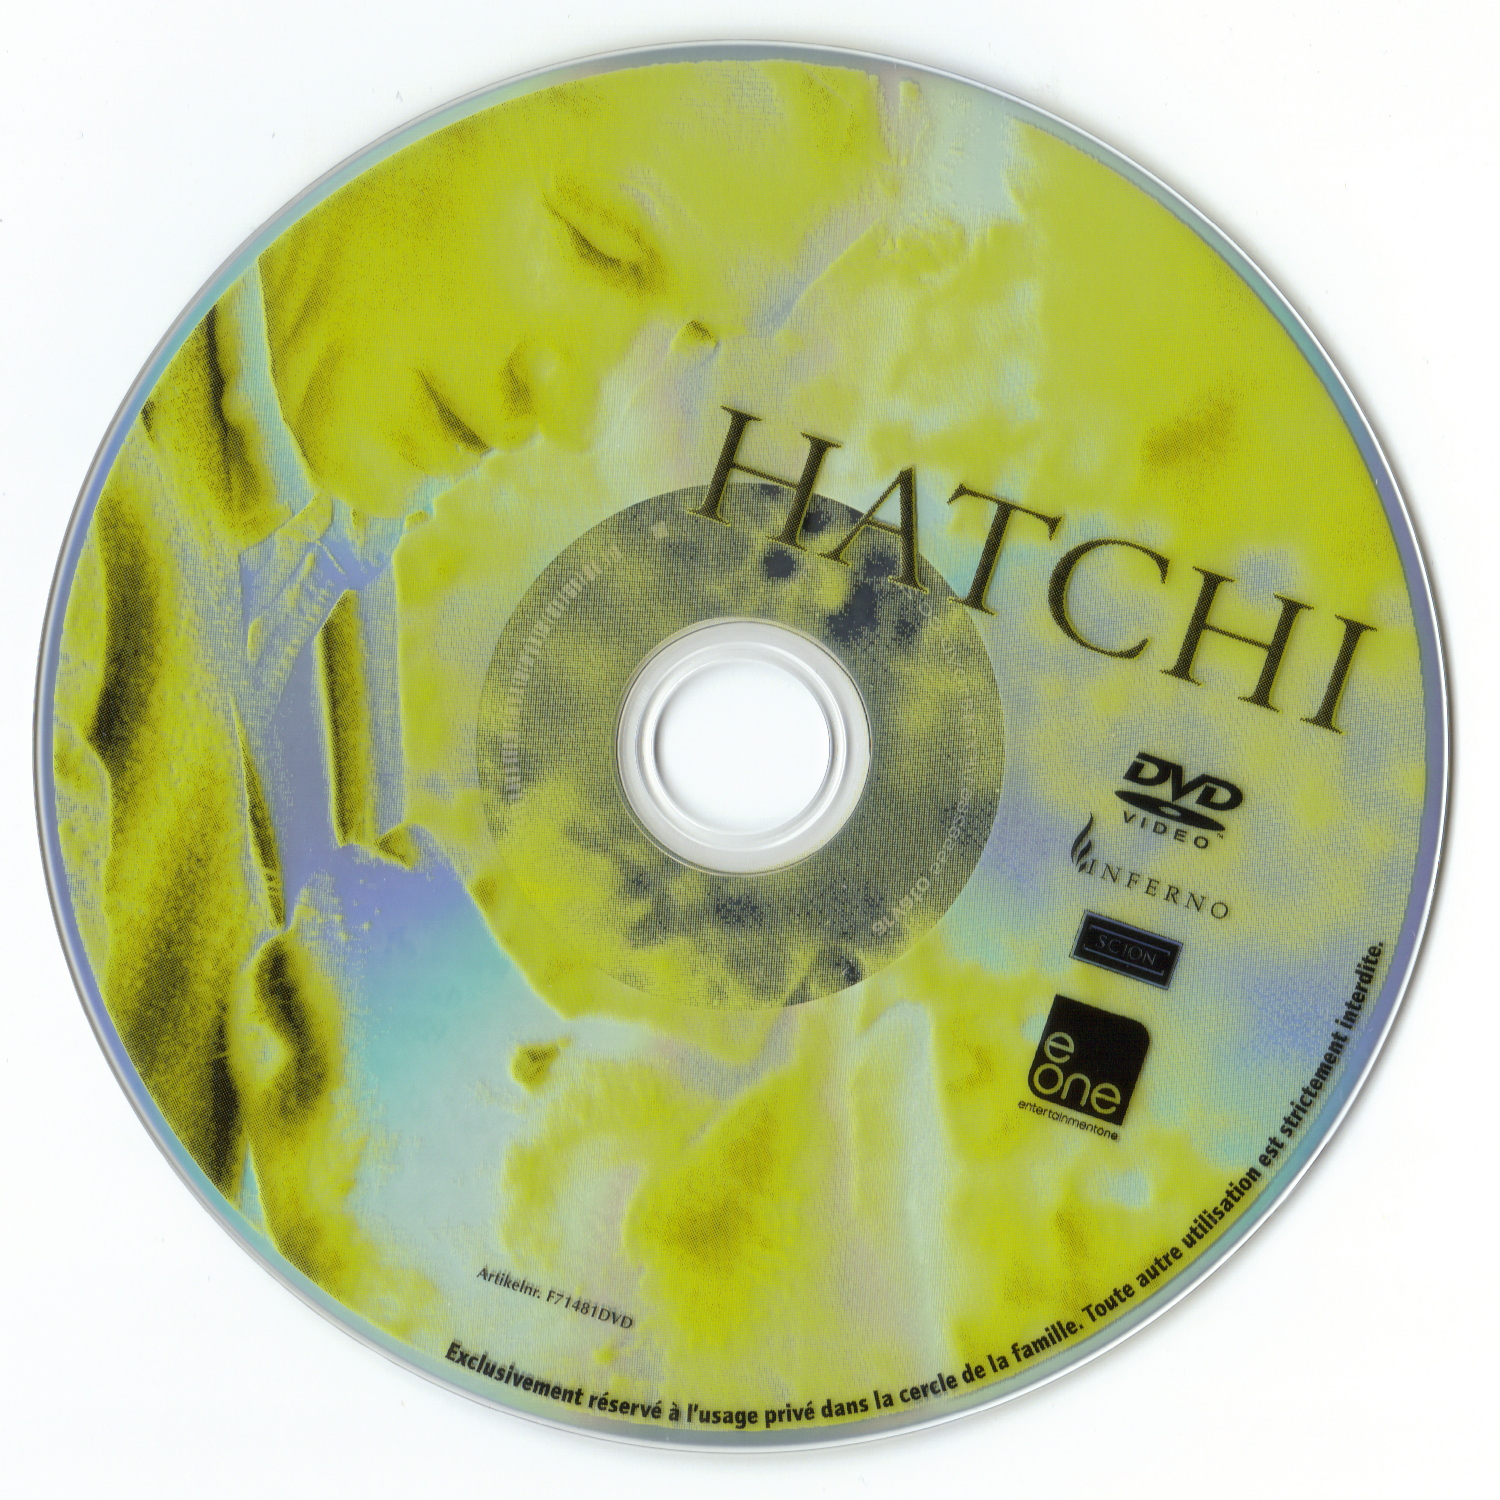 Hatchi v2